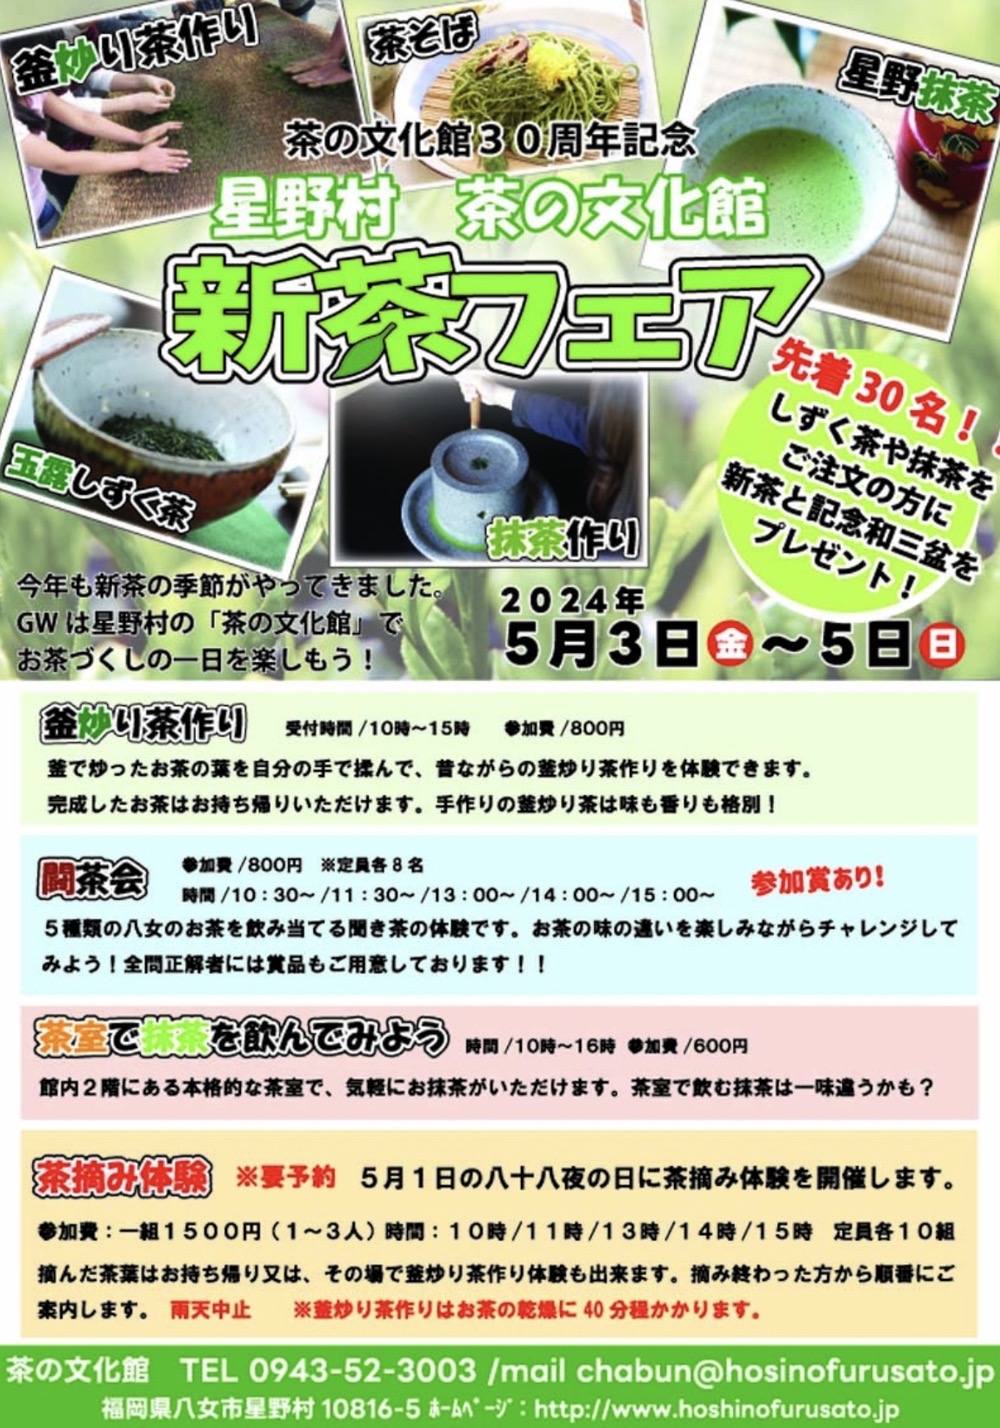 星野村 茶の文化館 30周年記念 「新茶フェア」イベント内容